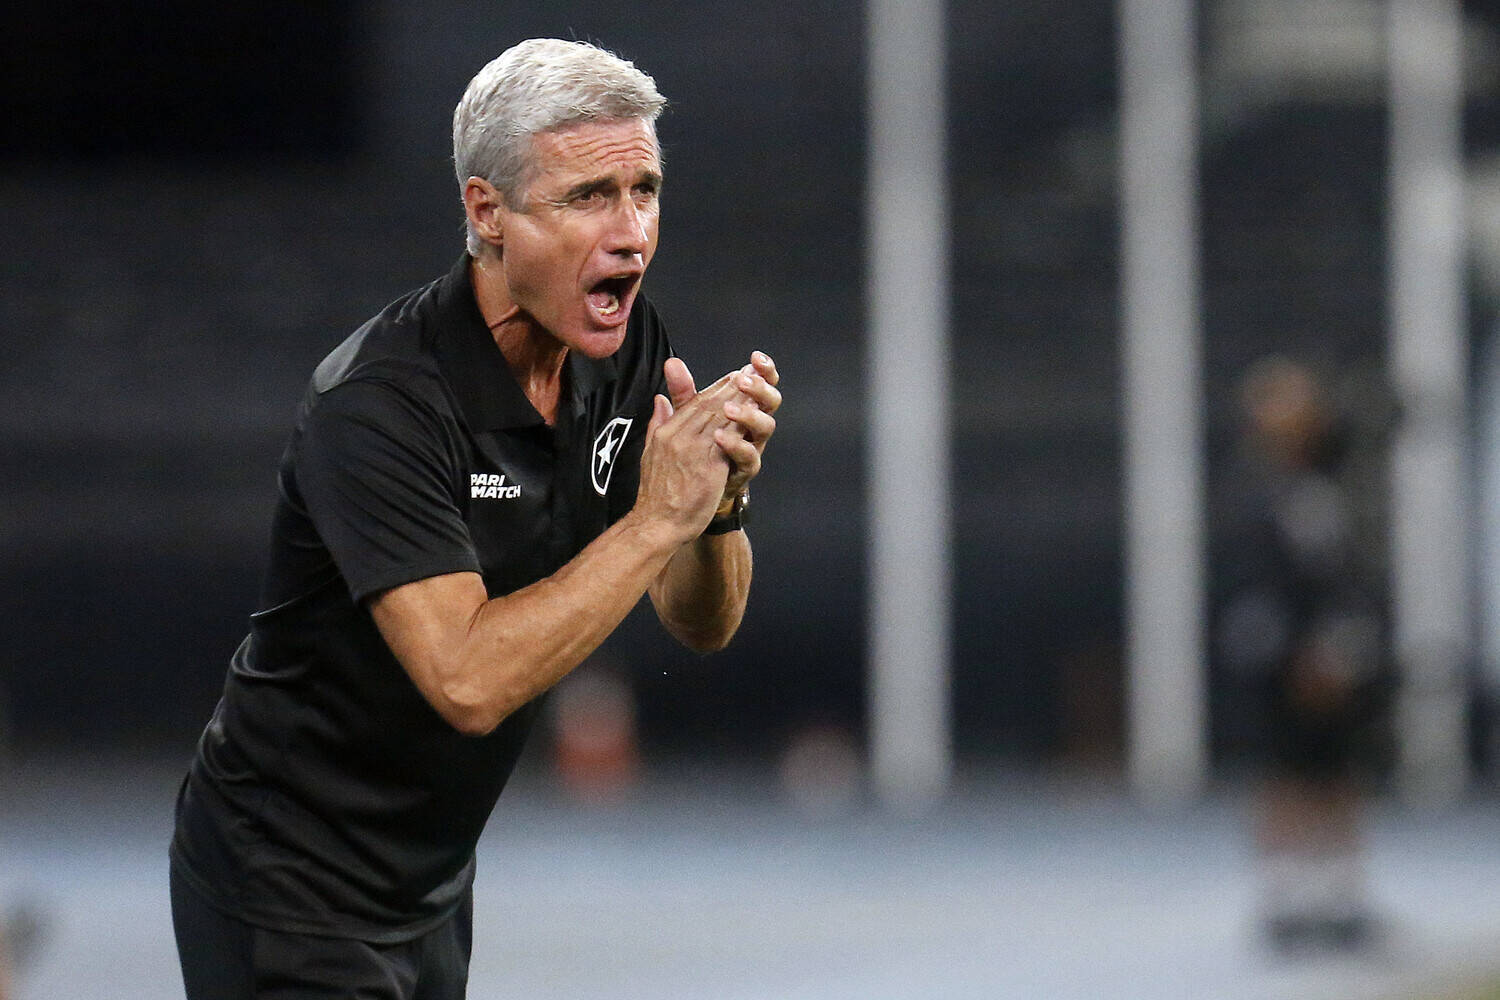 Santos busca empate com Botafogo no fim e amplia sequência invicta